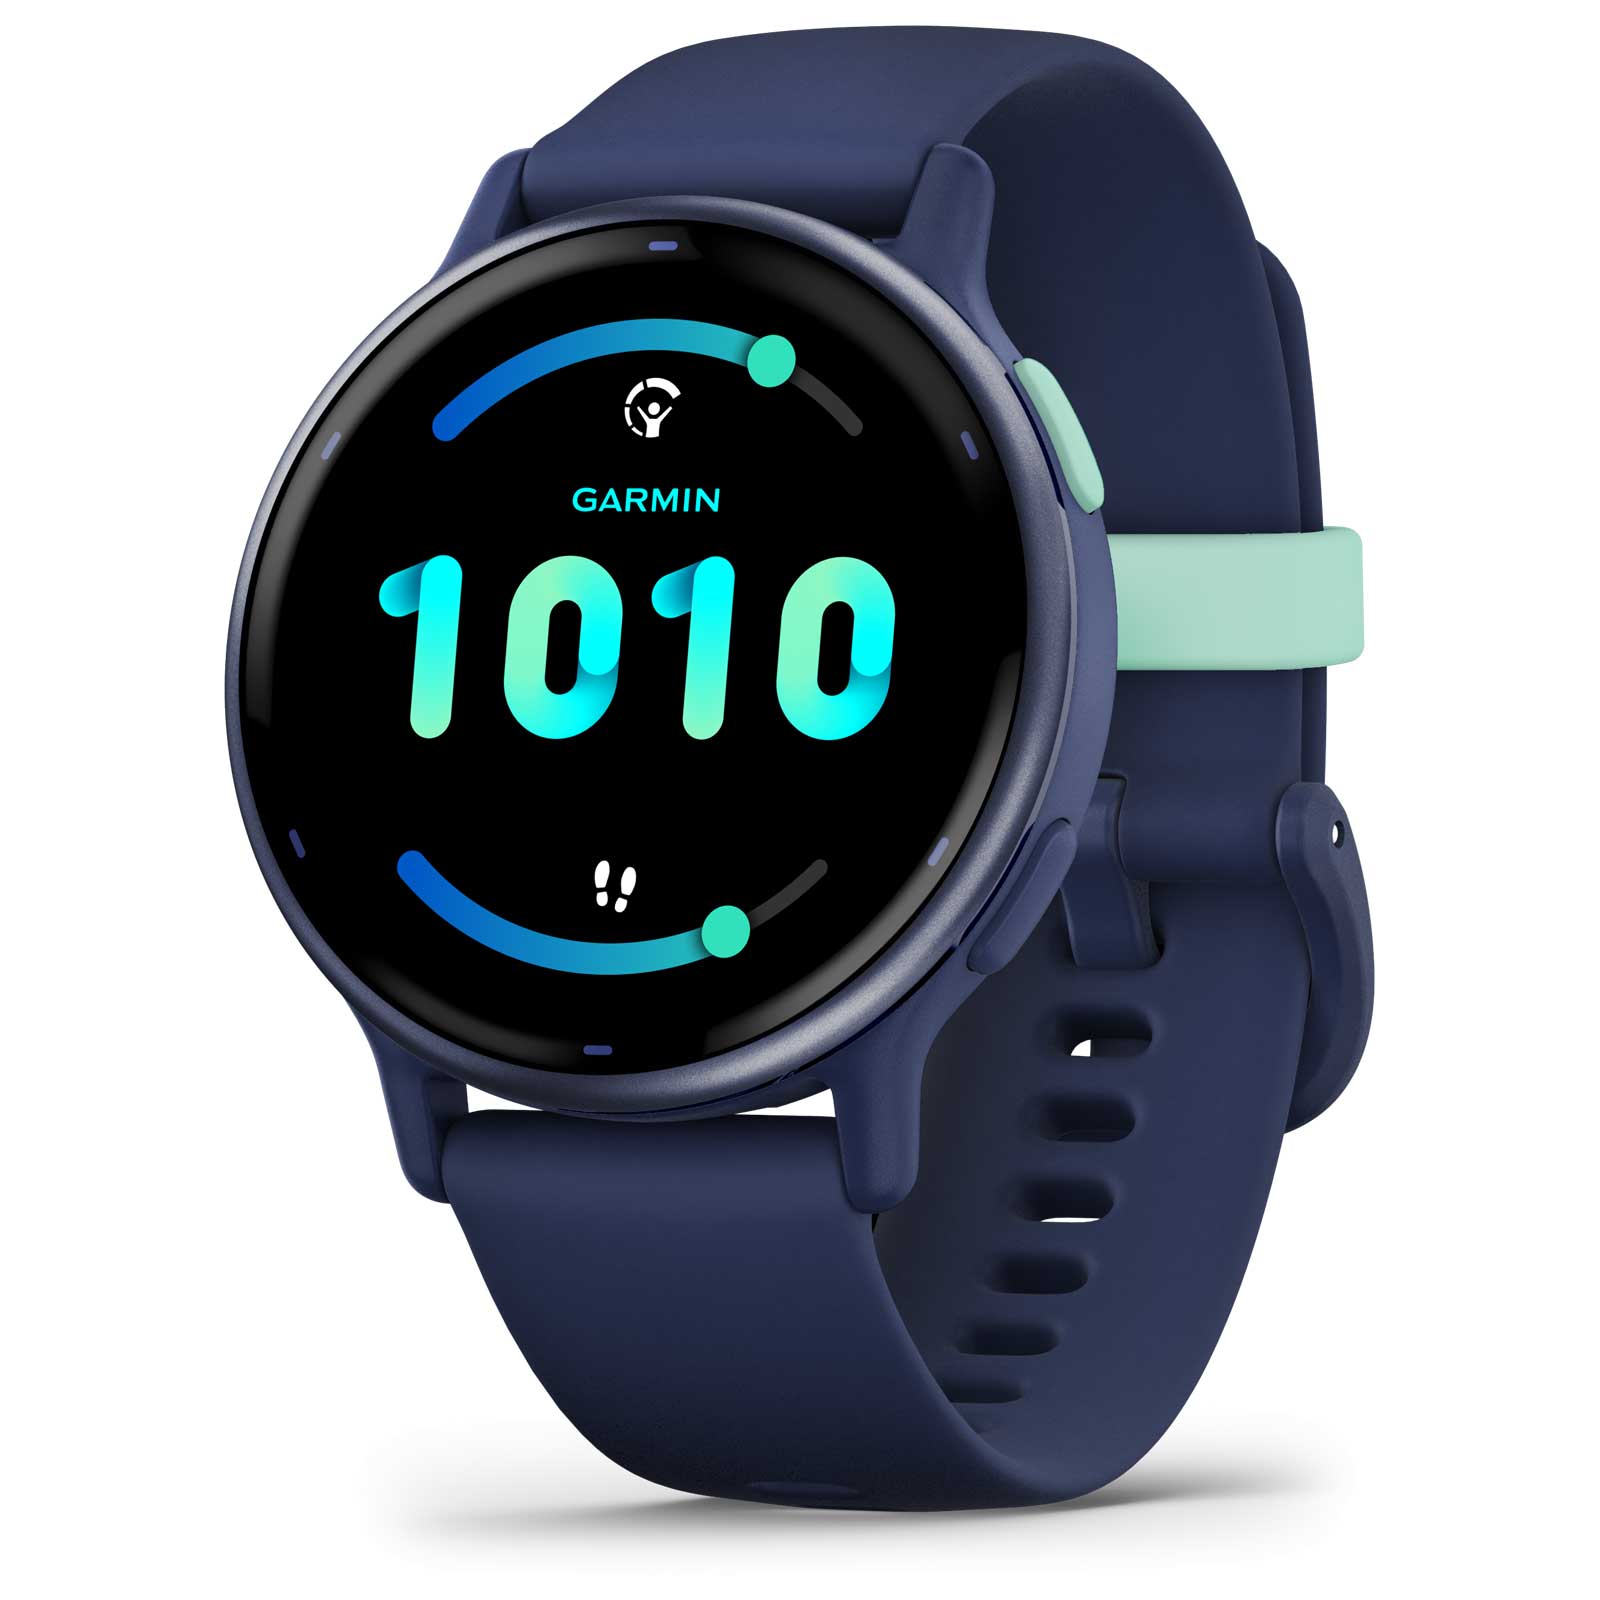 Produktbild von Garmin vivoactive 5 GPS Smartwatch - Königsblau/Blau Metallic